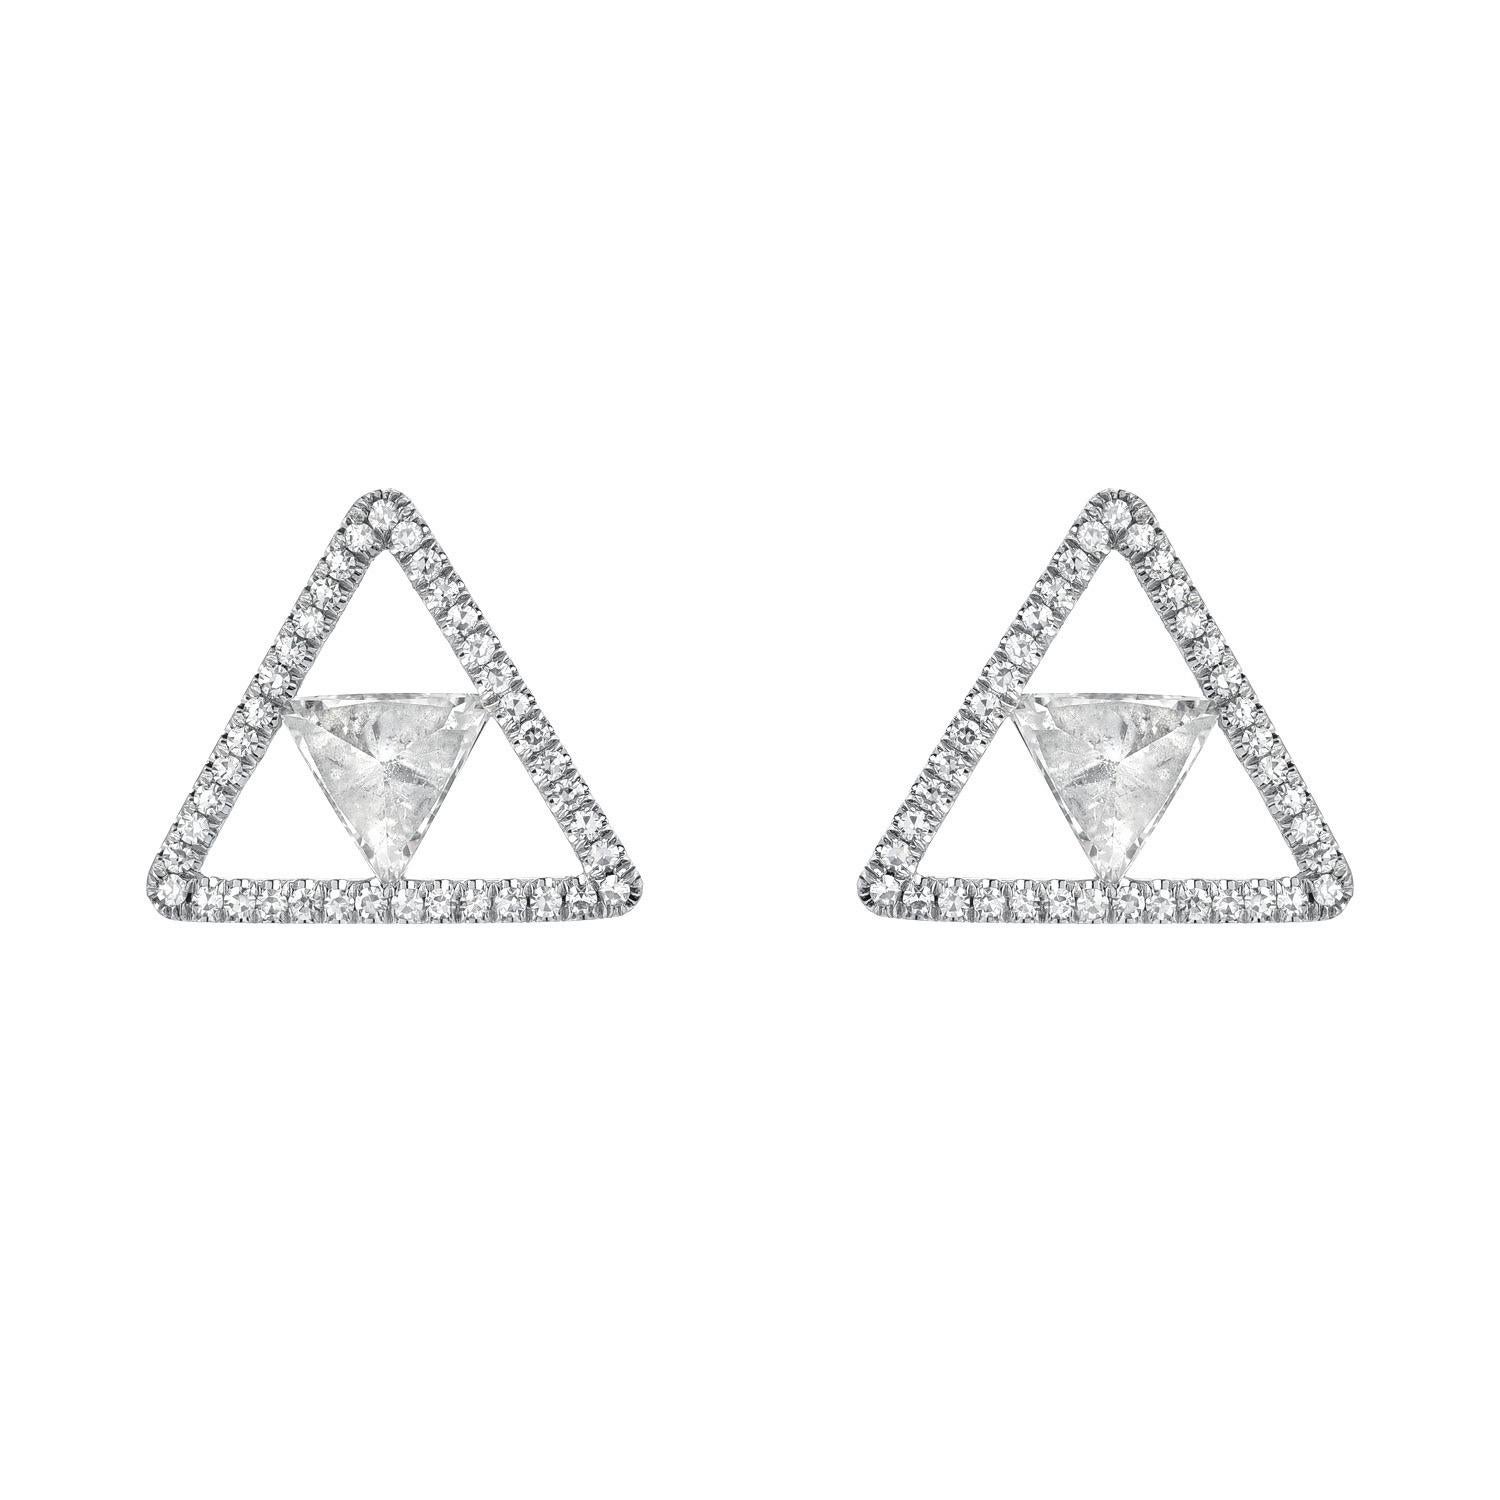 Boucles d'oreilles en platine composées de diamants Trillion en serti inversé pesant un total de 0,49 carats, H/SI1, encadrés par des diamants ronds de taille unique F/VS.
Taille des boucles d'oreilles : 10 millimètres.
Fabriqué par des mains